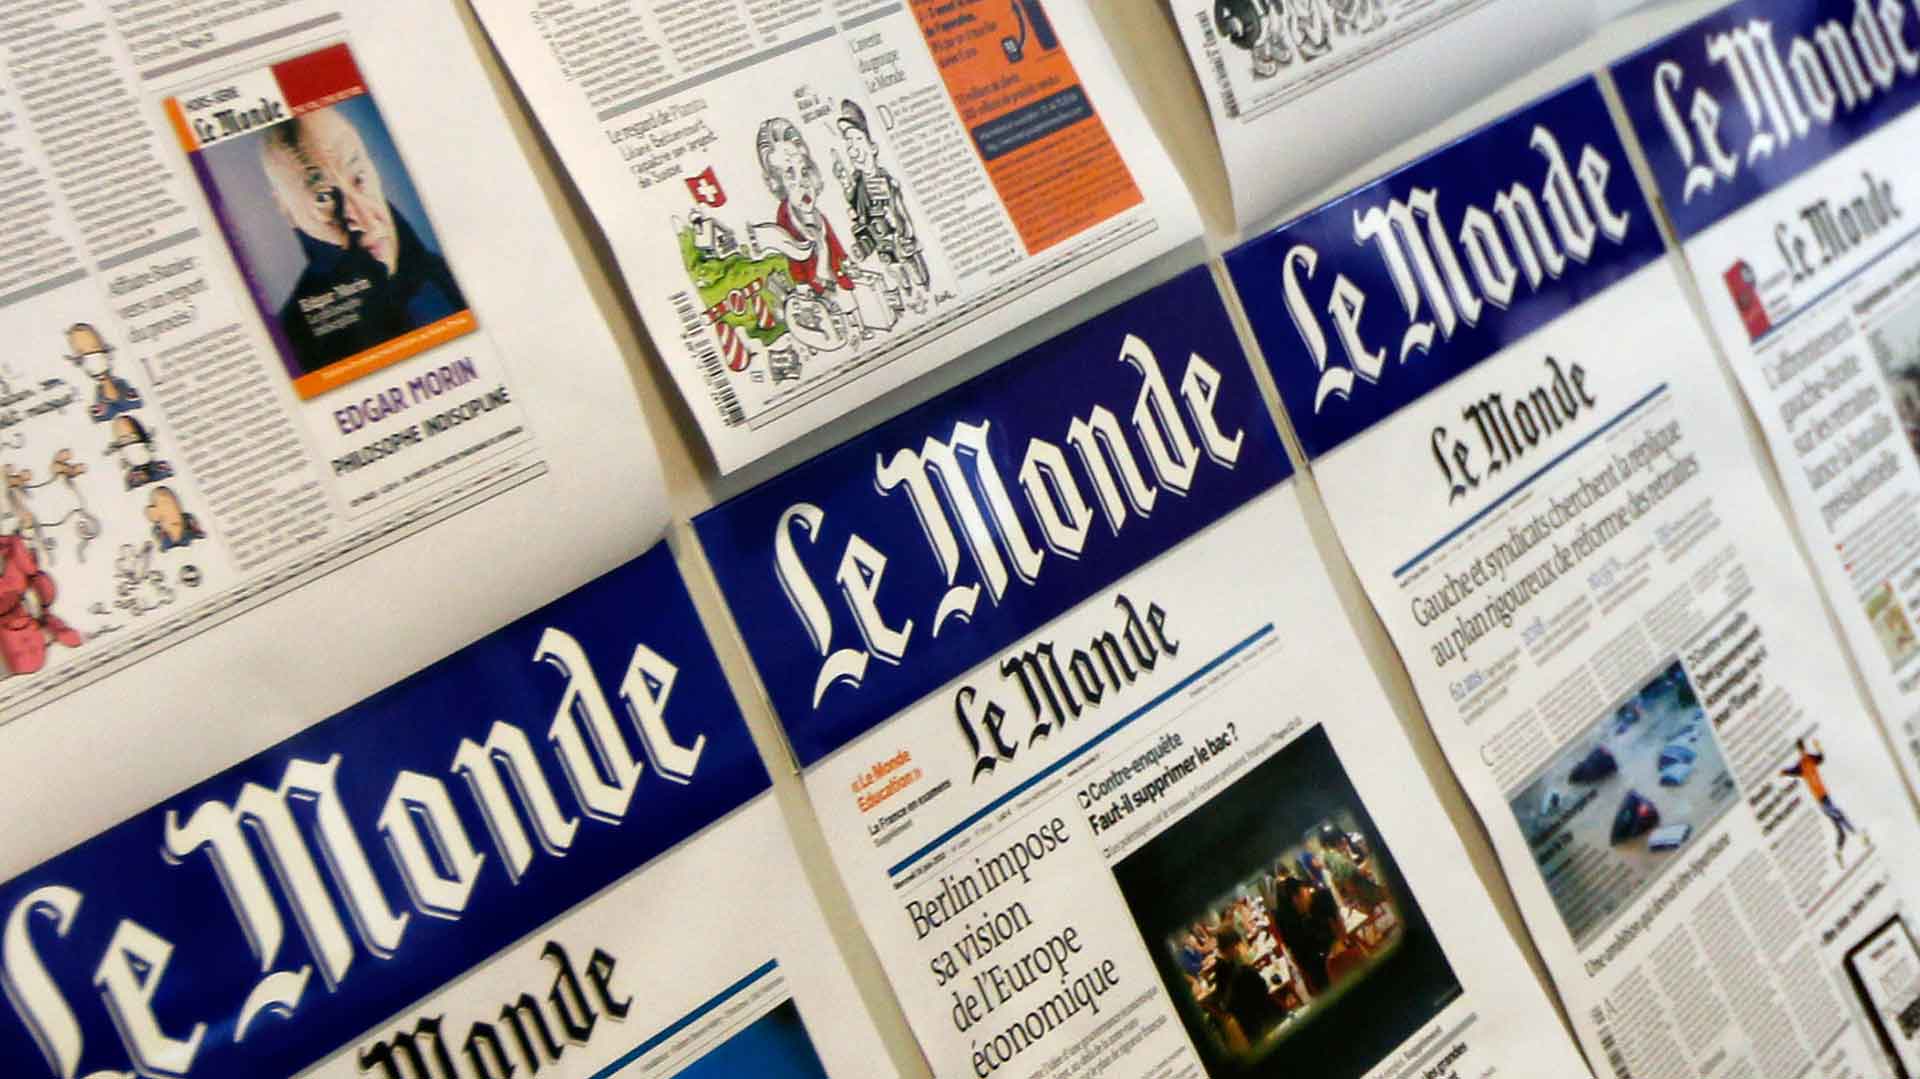 Una periodista de 'Le Monde' dice que el PDeCAT le ofreció publicidad a cambio de hablar bien del procés